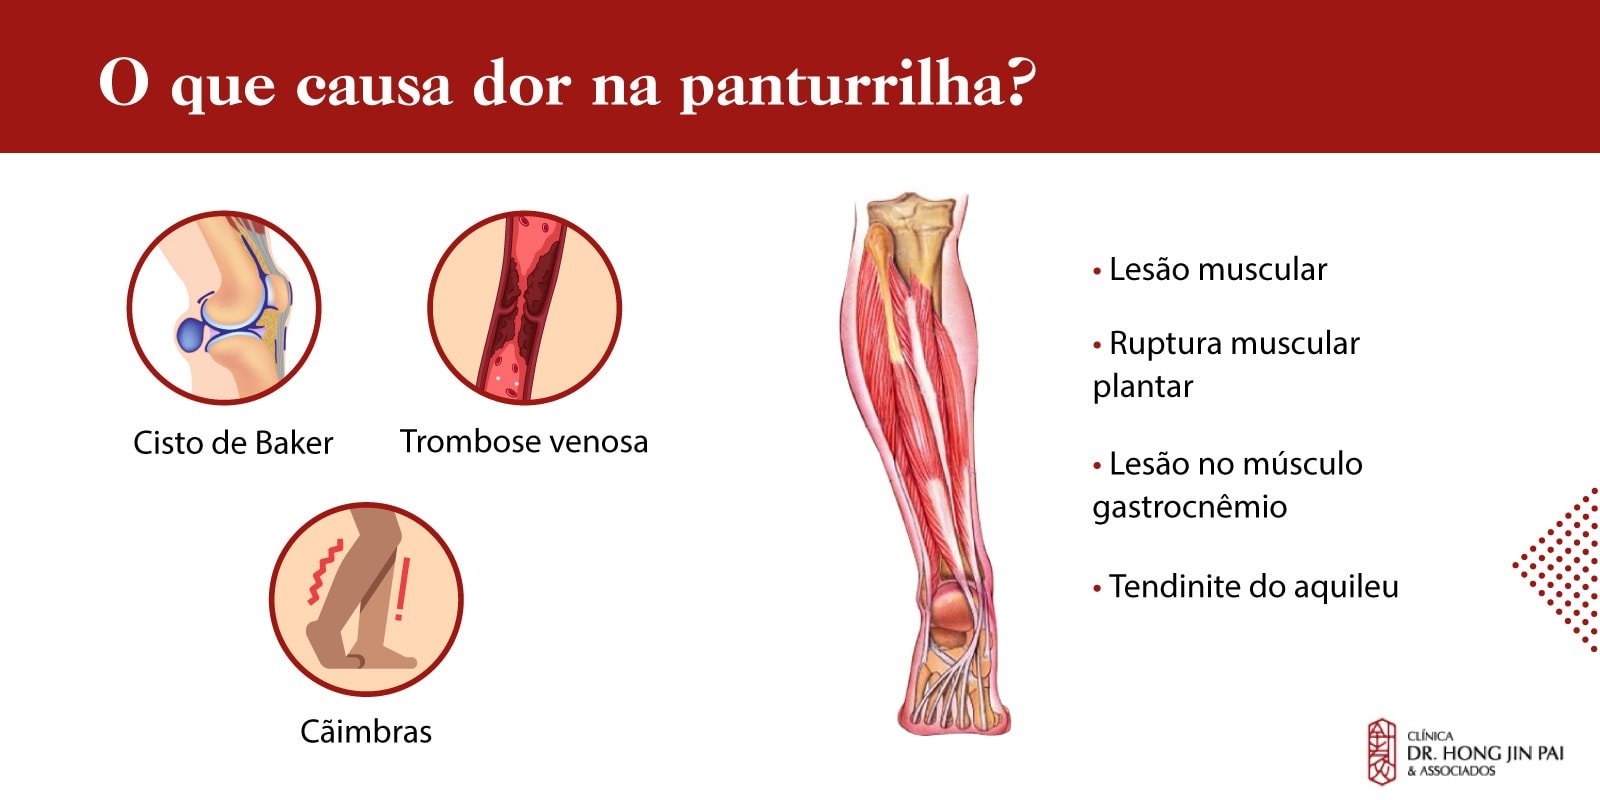 Infografico causas de dor na panturrilha